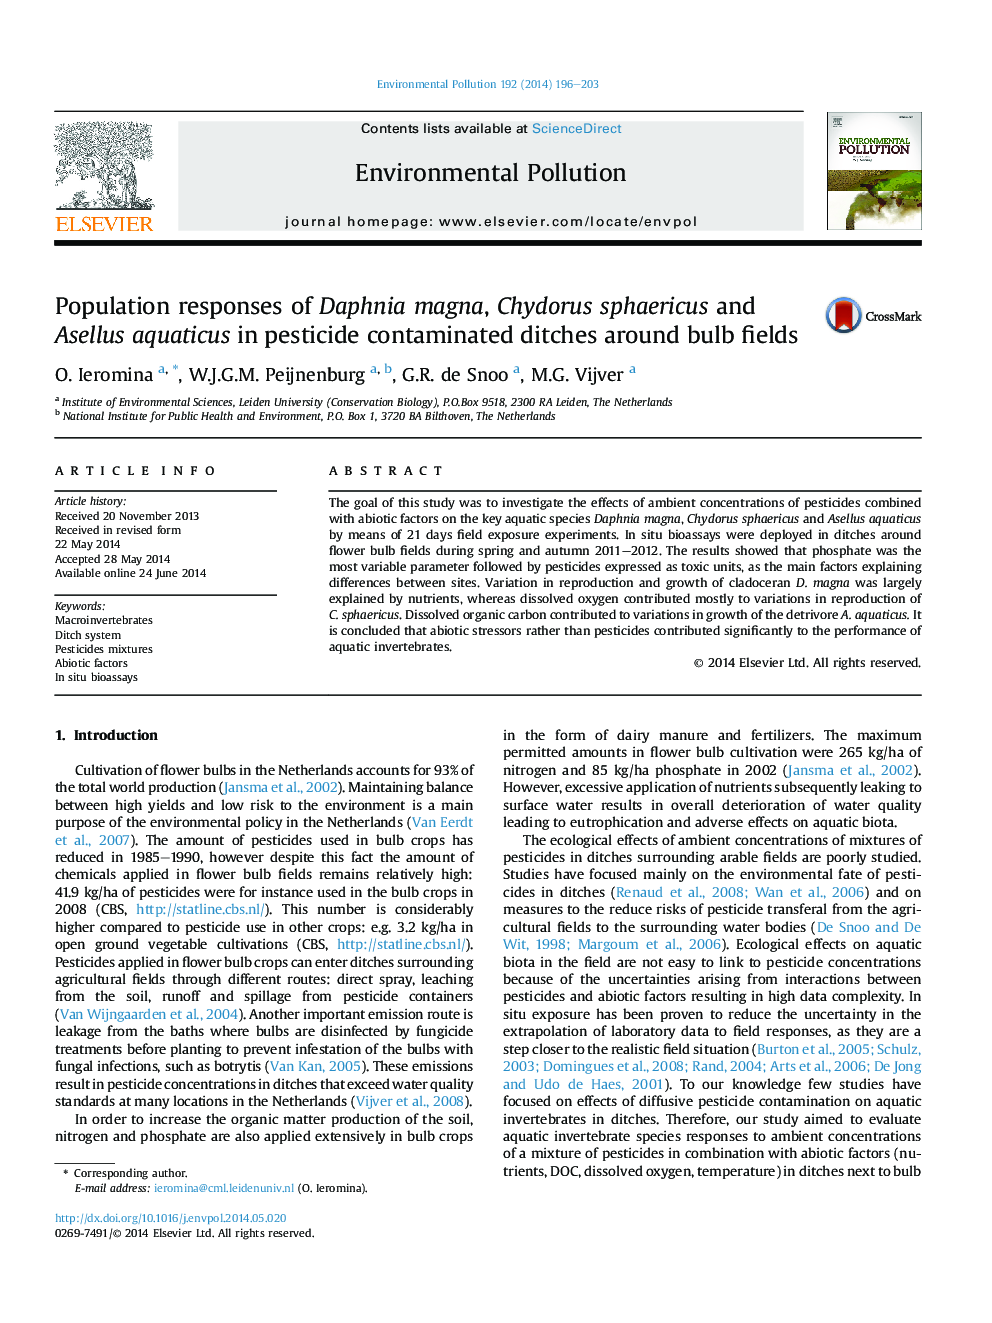 Population responses of Daphnia magna, Chydorus sphaericus and Asellus aquaticus in pesticide contaminated ditches around bulb fields